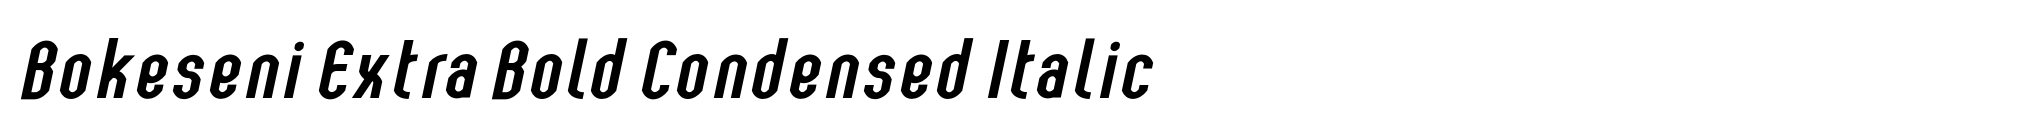 Bokeseni Extra Bold Condensed Italic image